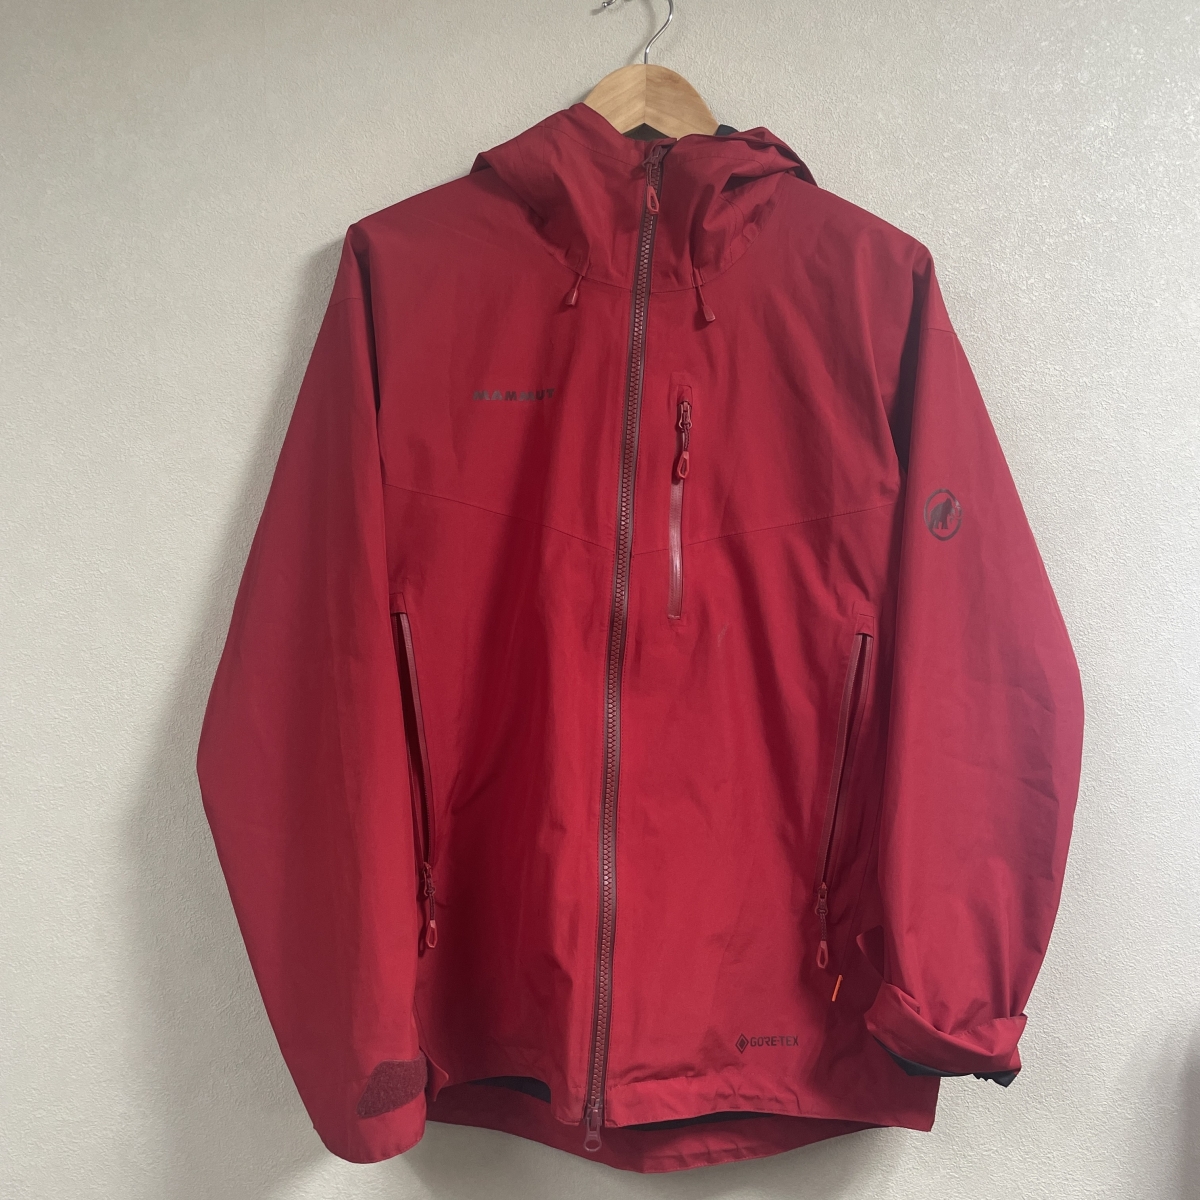 マムートのアヤコ プロ HS Hooded Jacket 1010-27550の買取実績です。